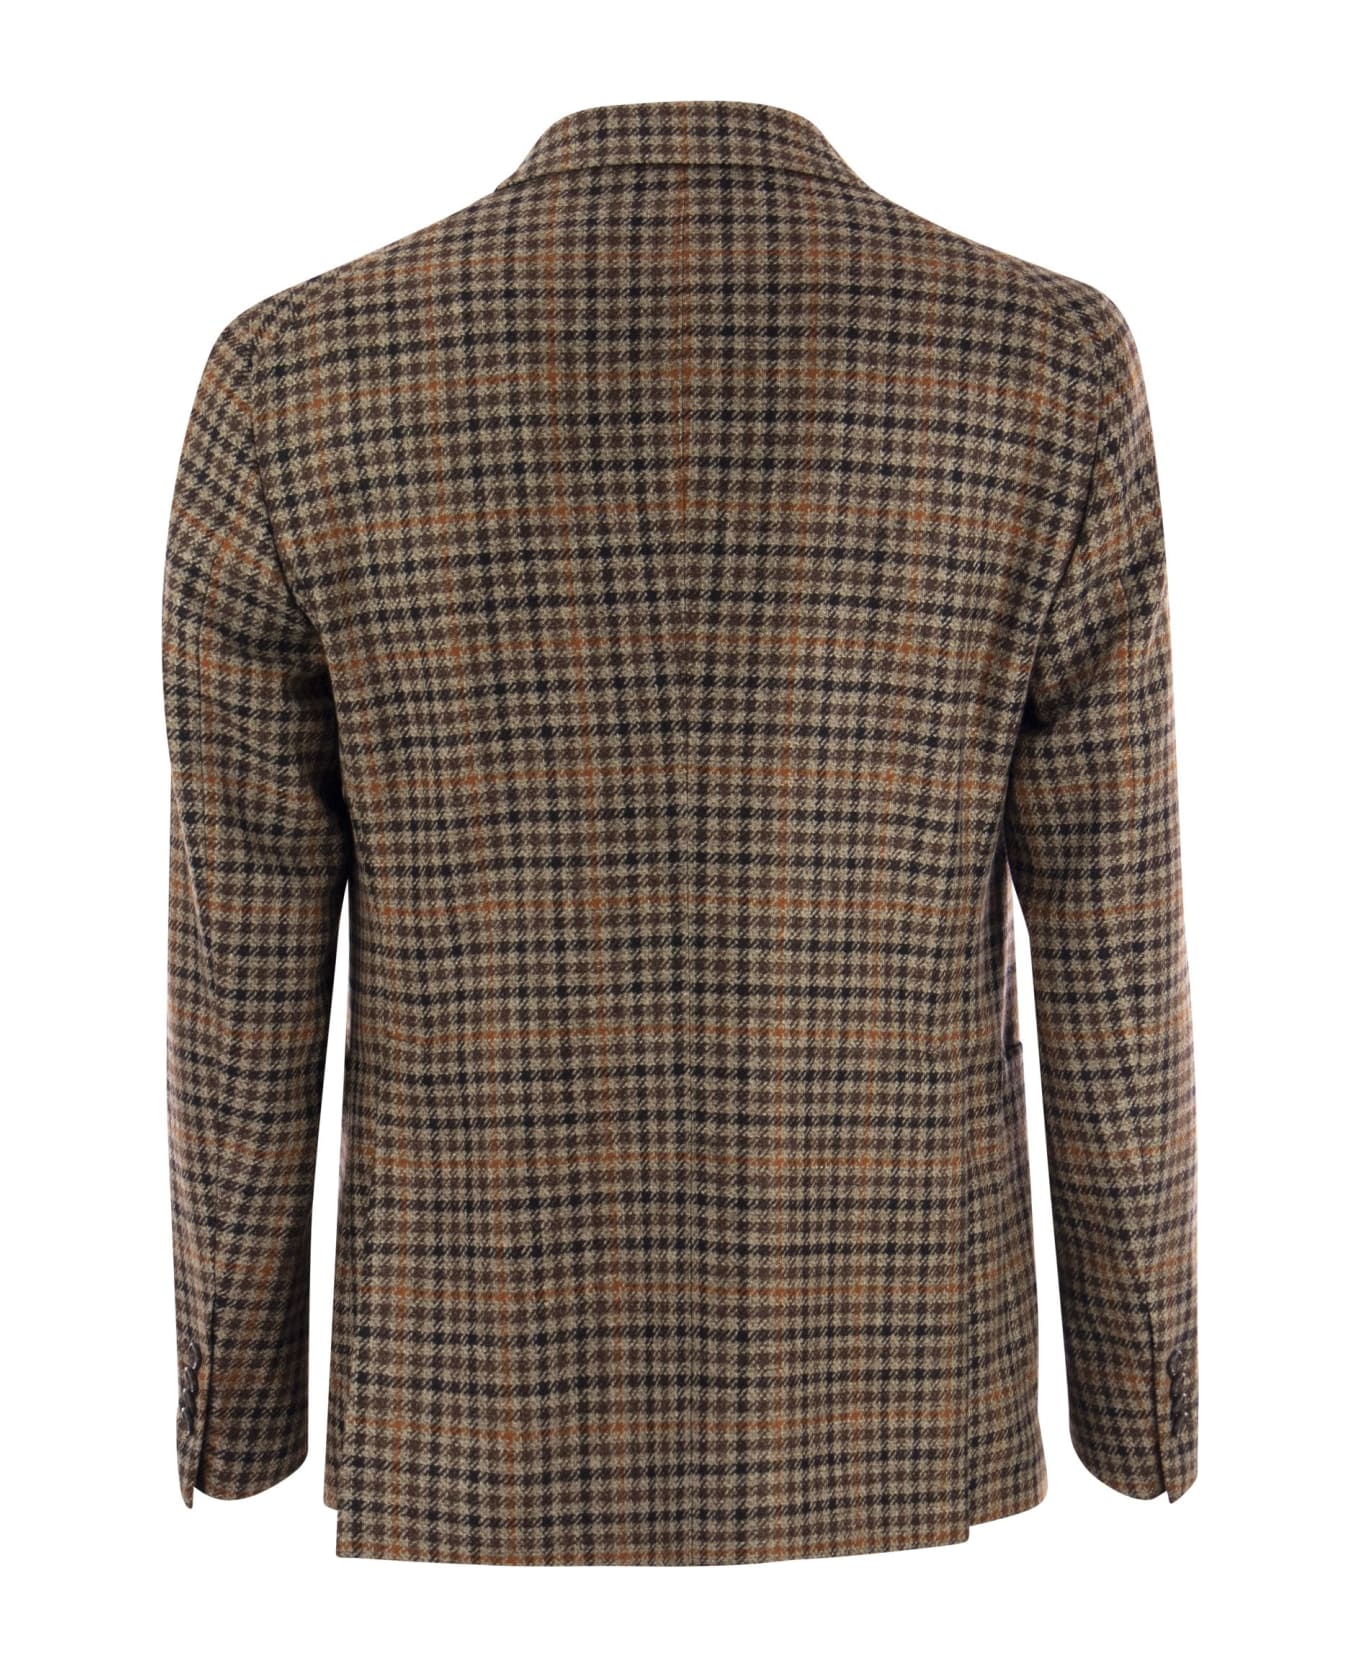 Tagliatore Montecarlo - Wool And Cashmere Checked Blazer - Brown スーツ